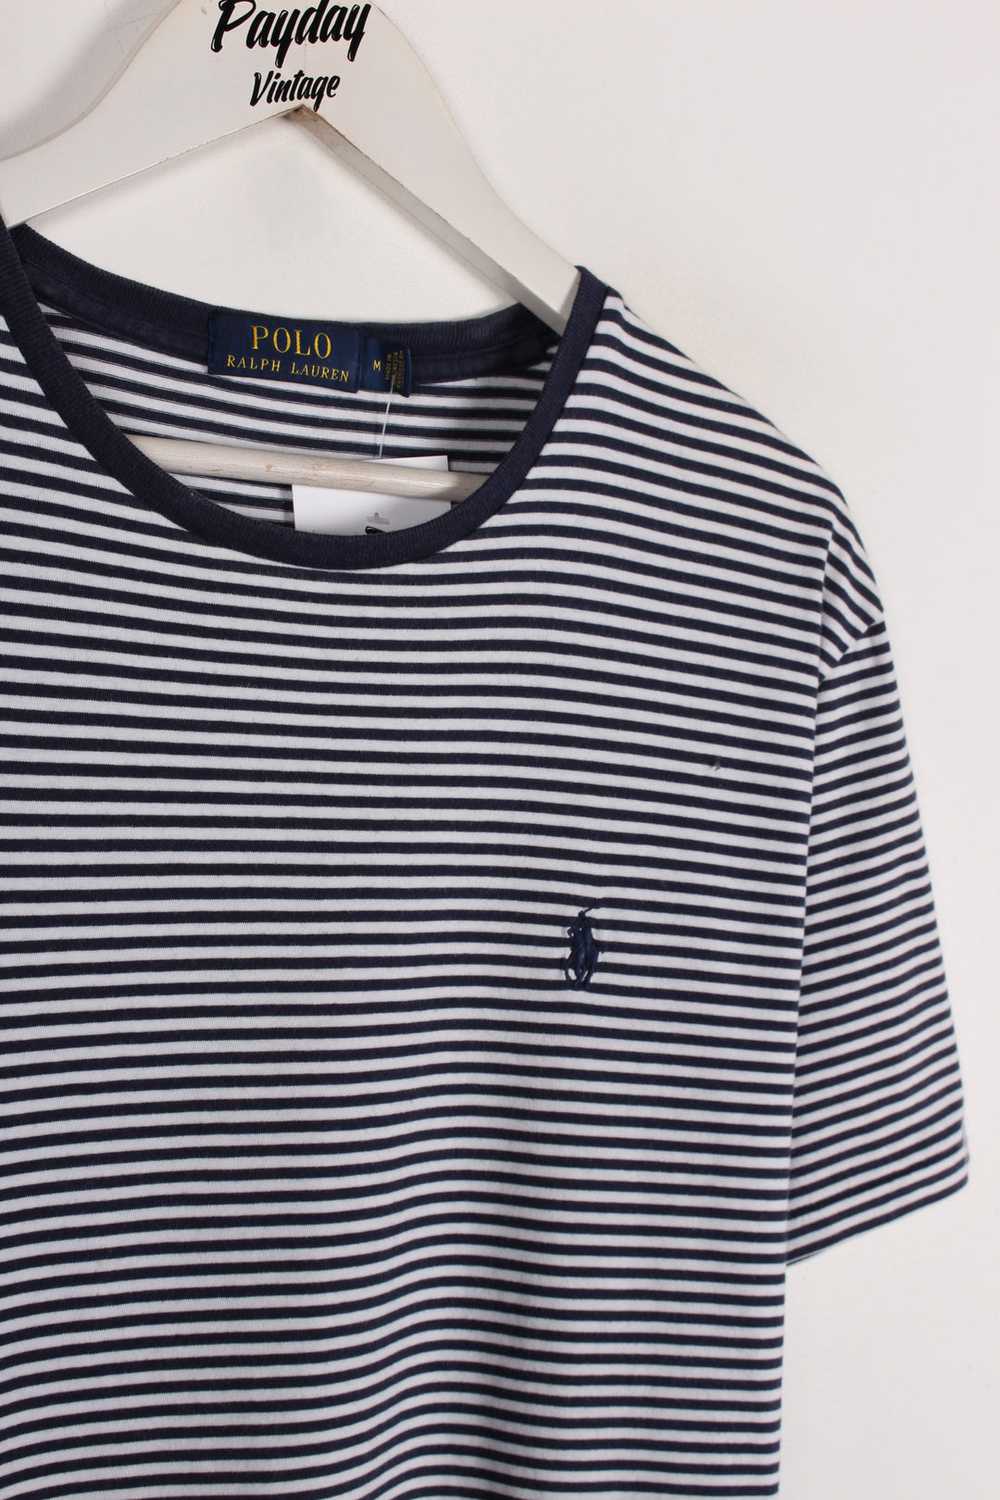 Ralph Lauren Striped T-Shirt Medium - image 2